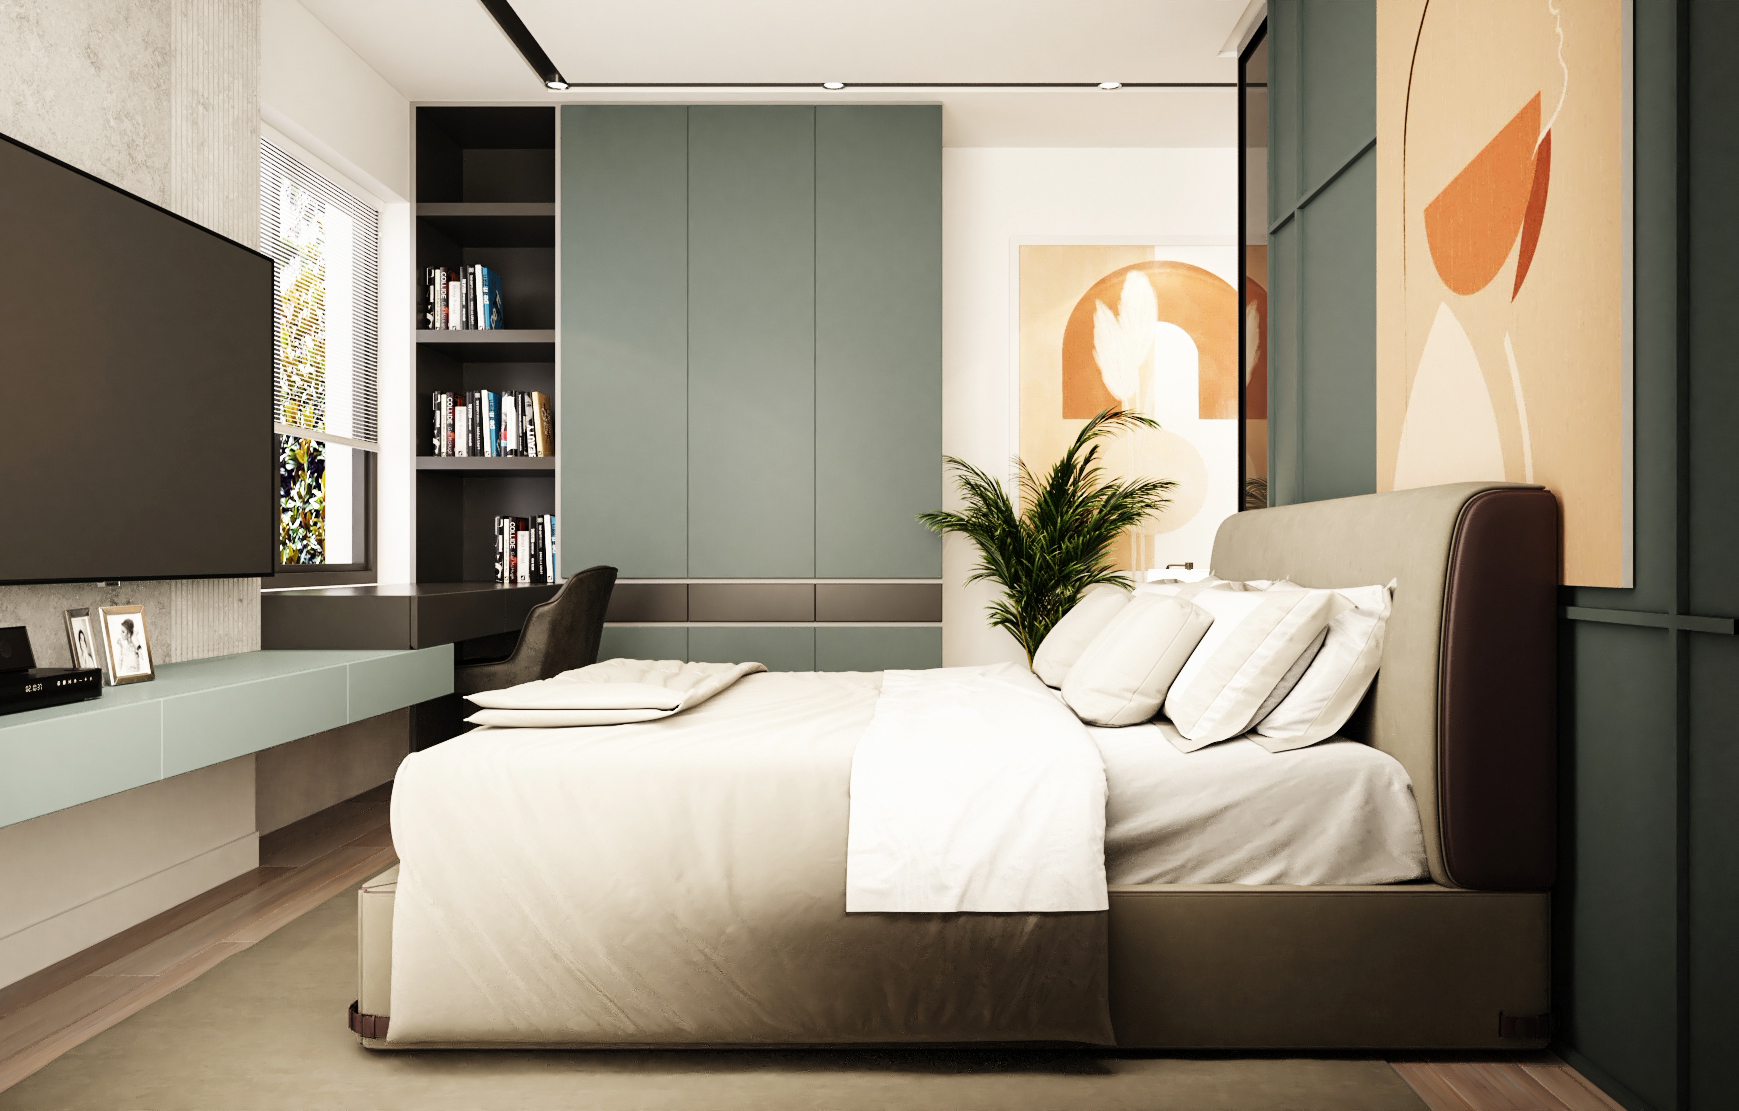 Thiết kế mẫu phòng ngủ 13m2 – Tây Hồ Residence – anh Long